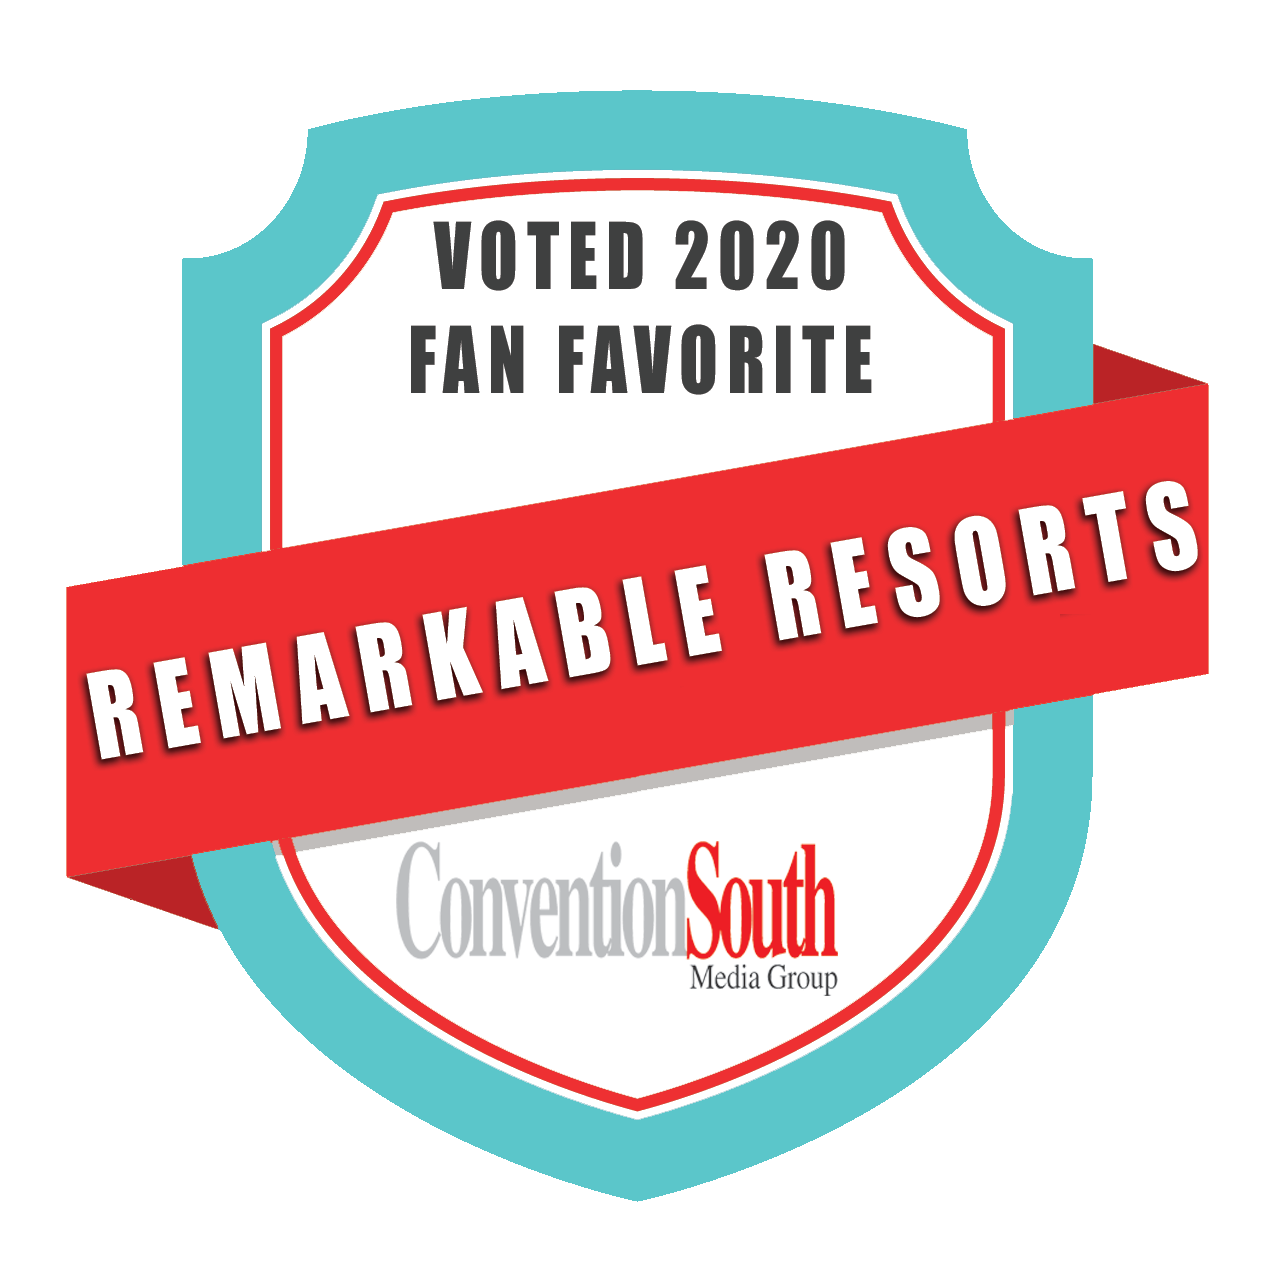 Remarkable Resorts Award, 2020 Fan Favorite